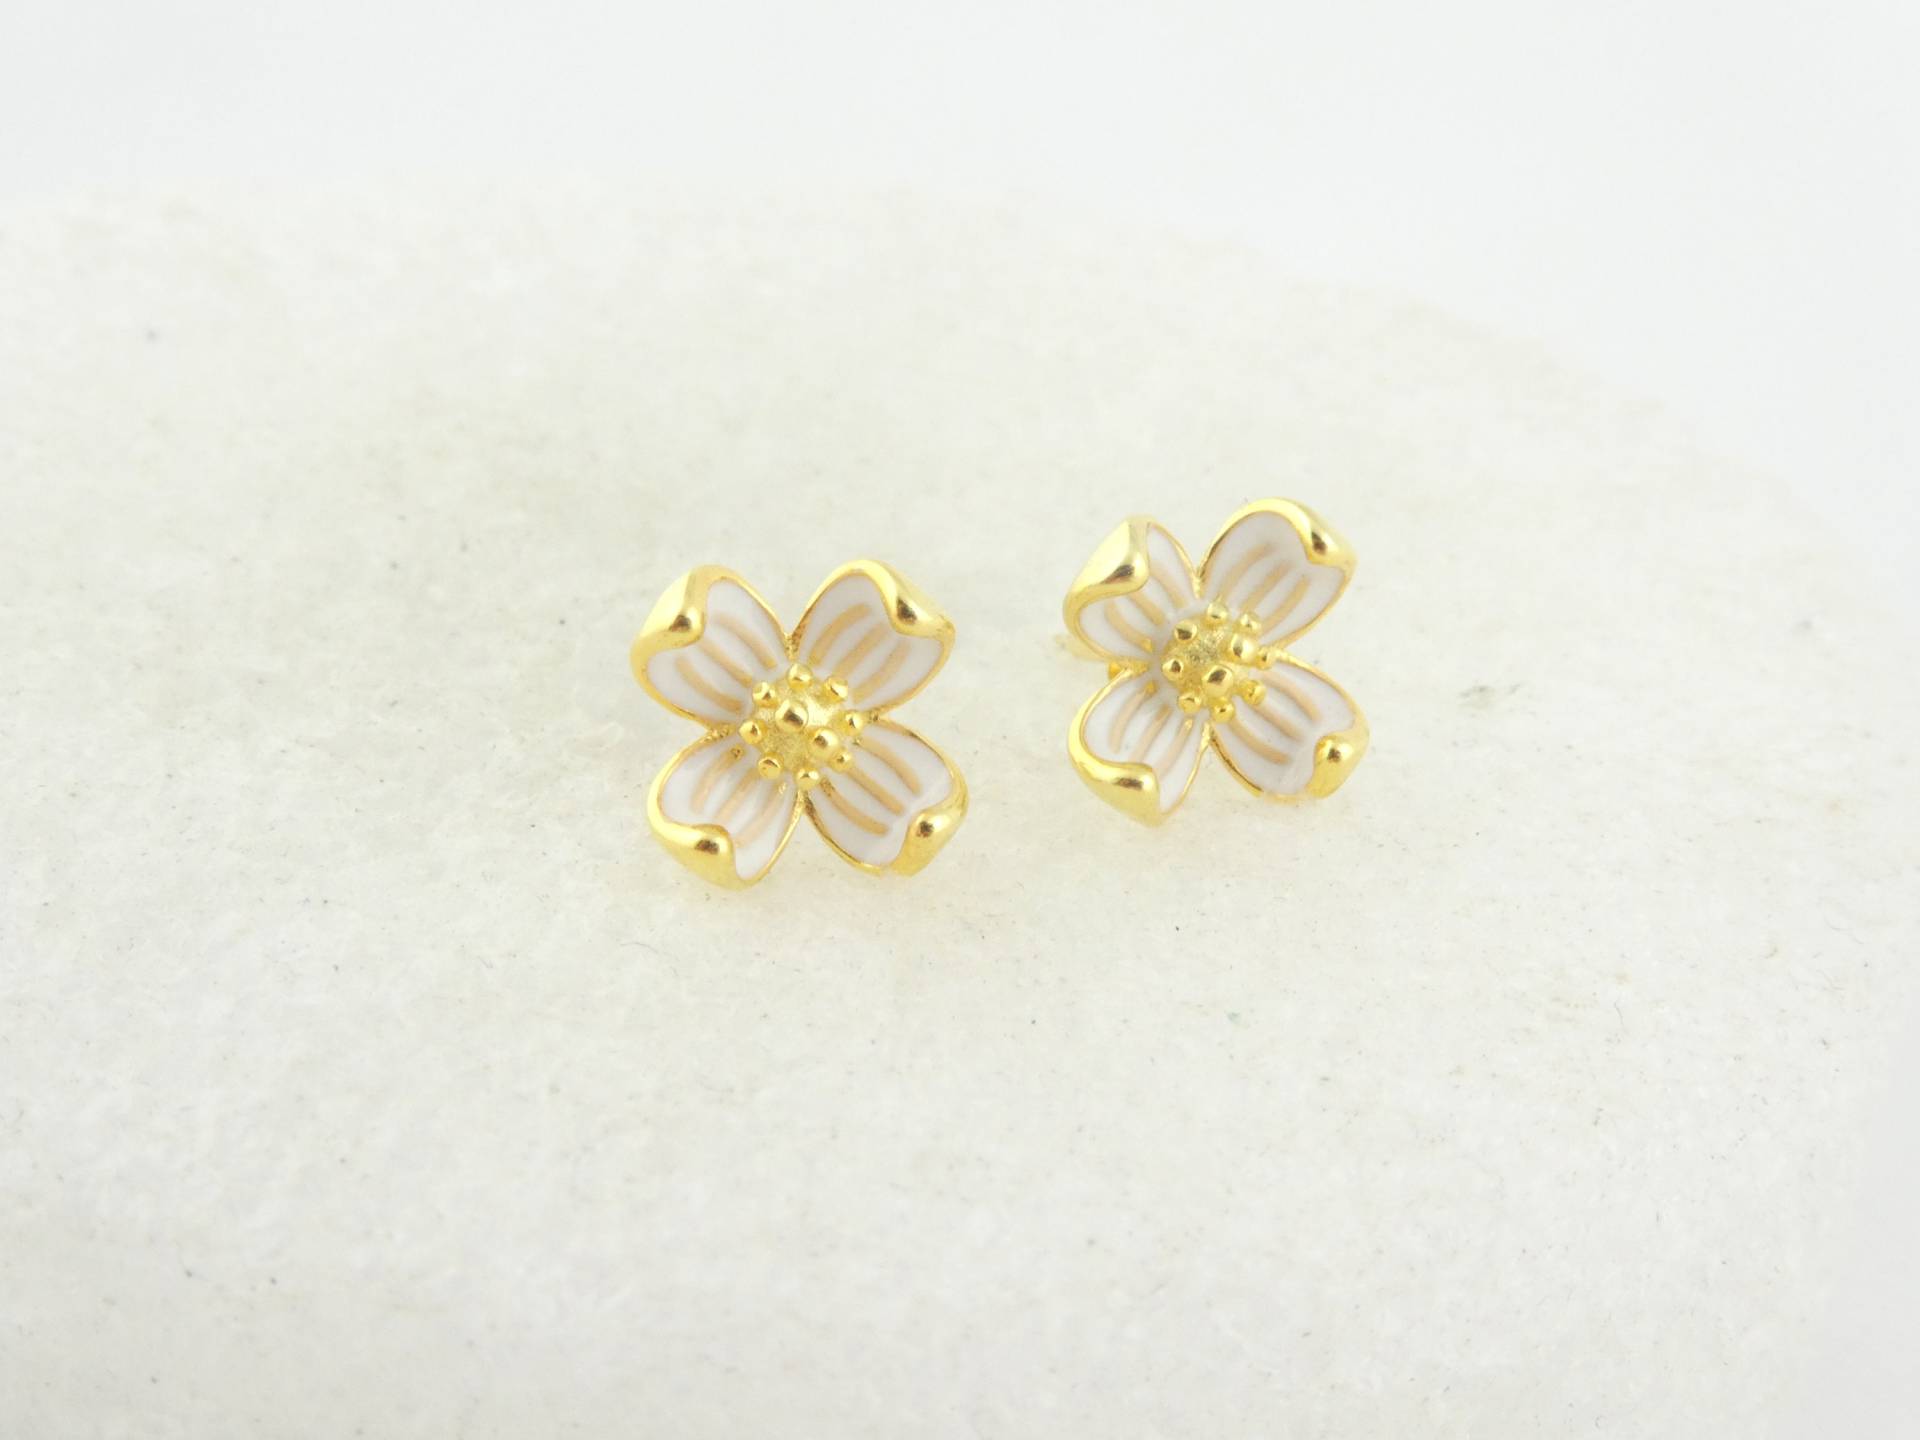 925 Ohrstecker Ohrringe Gold Weiss Blume Blumen Blüte Emaille Minimalist 9mm, Kleine von GlasschmuckBirgitH